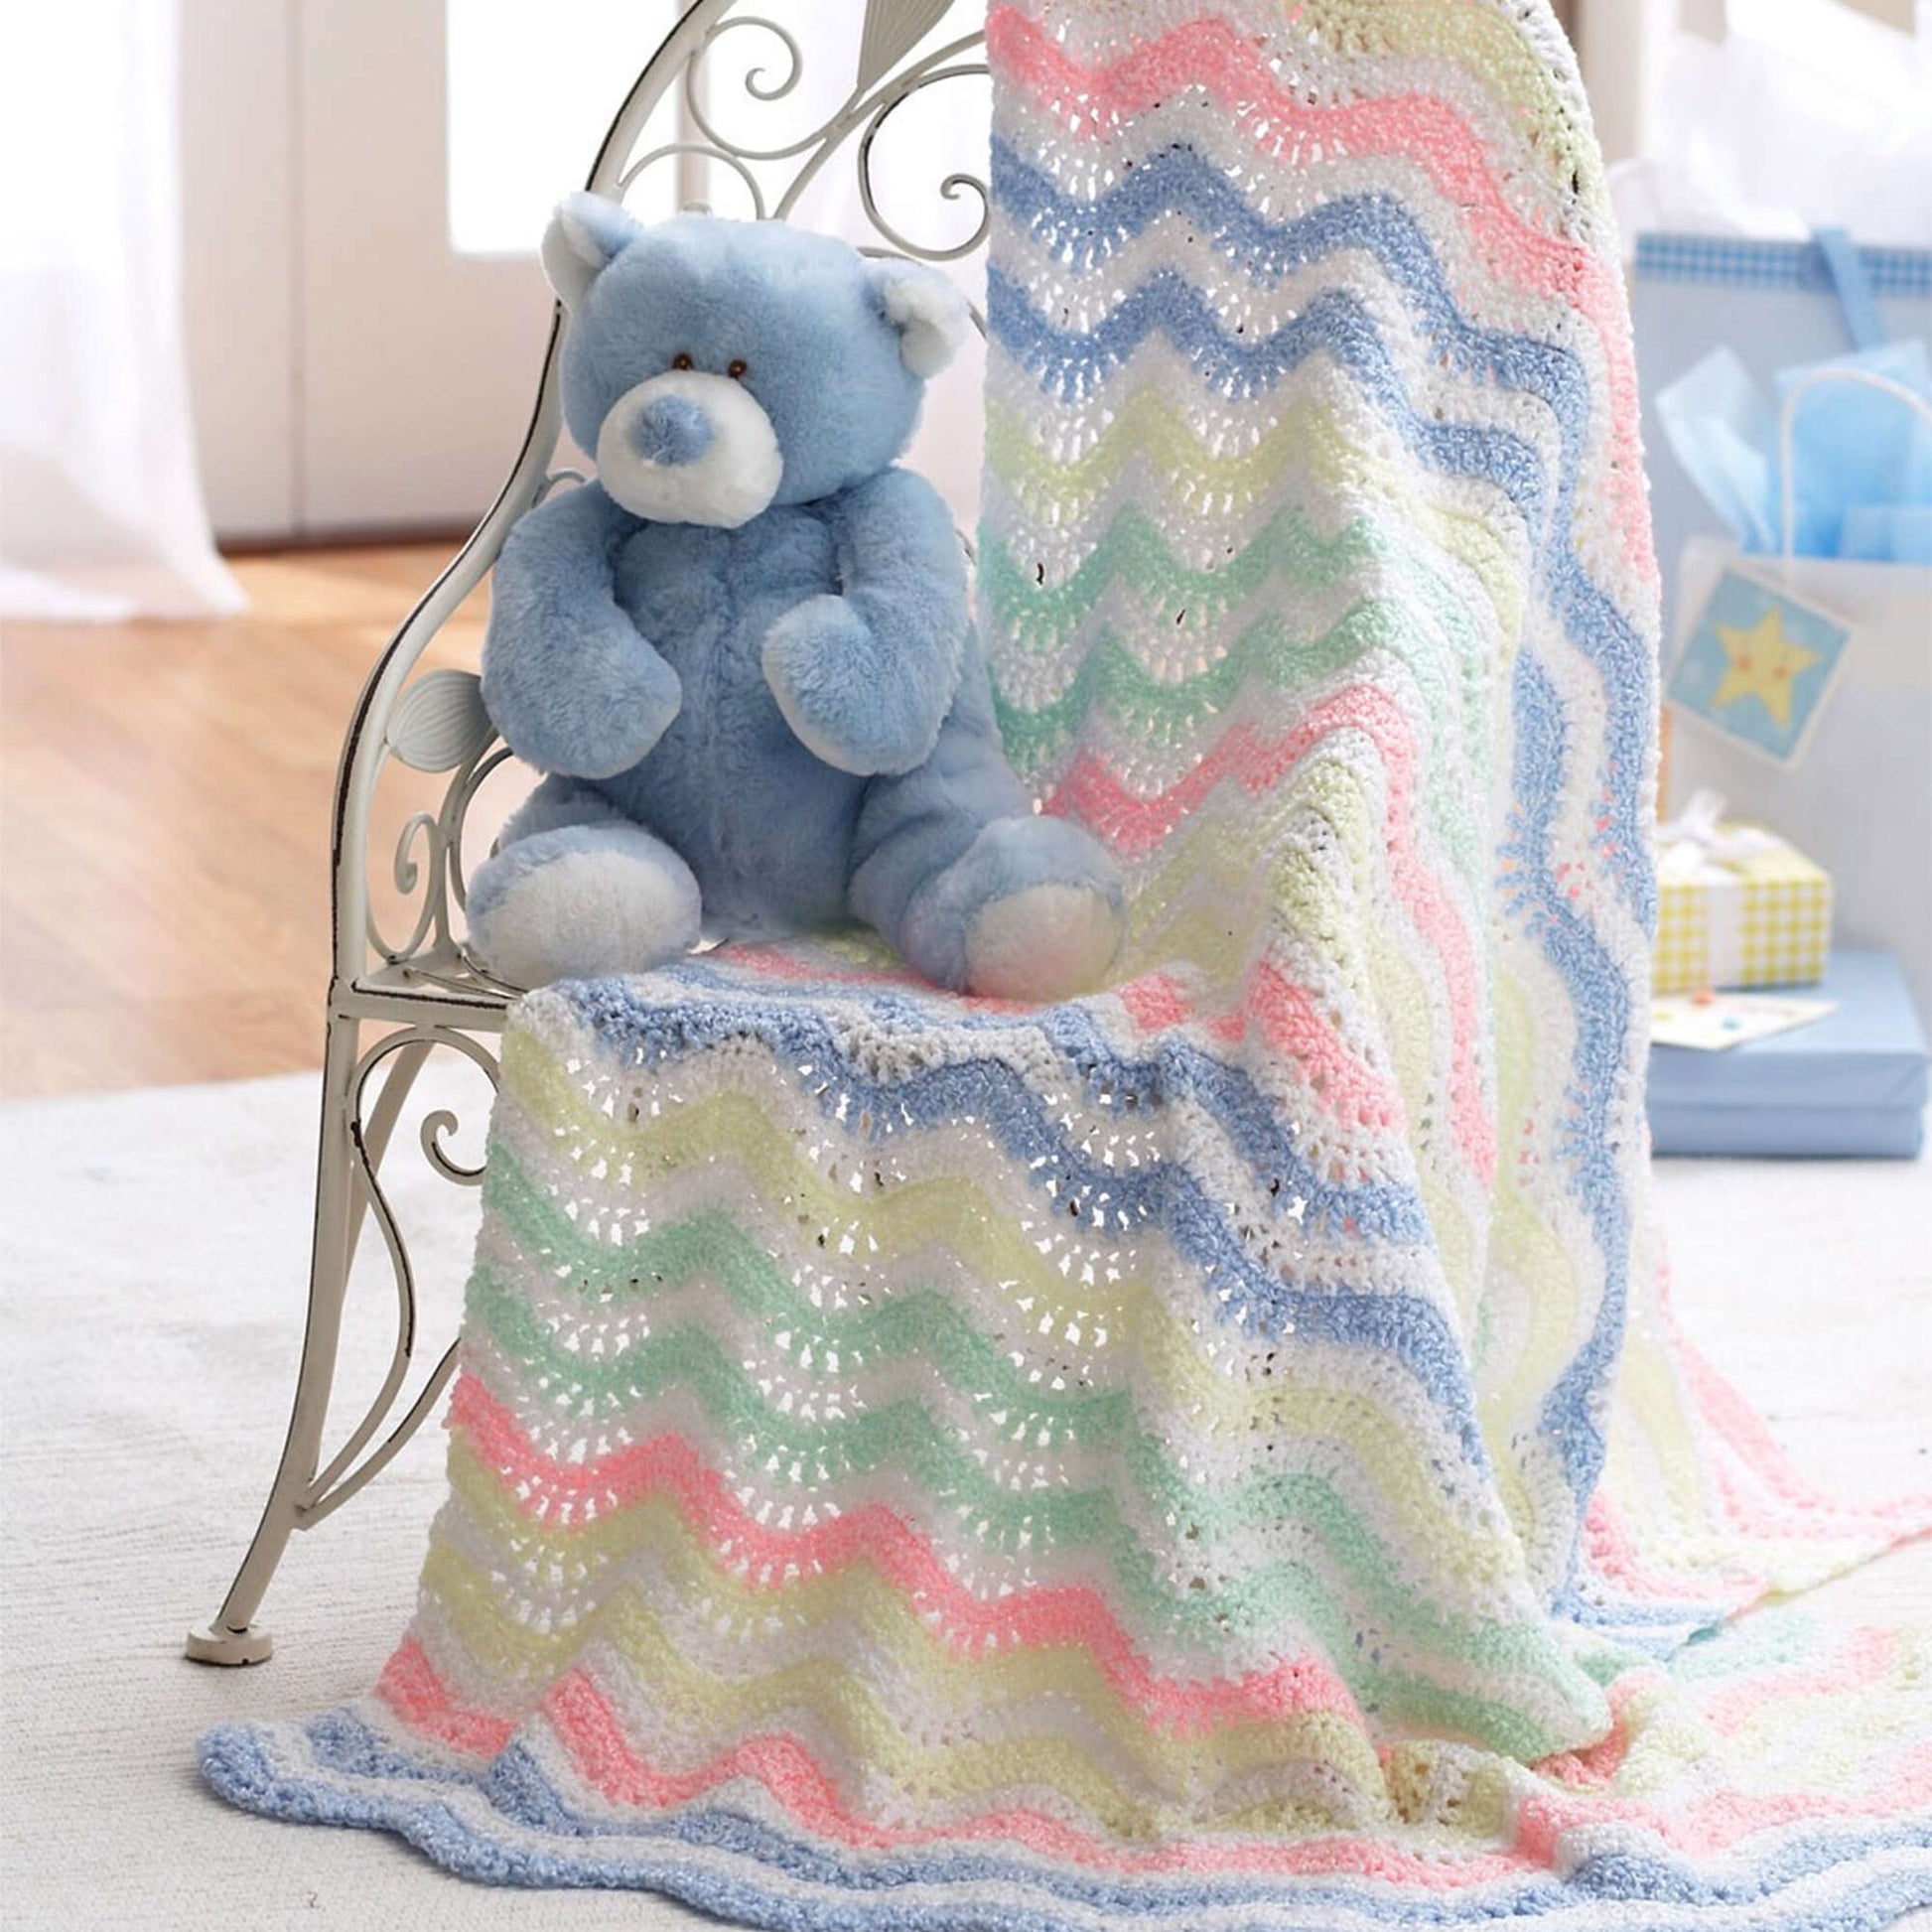 Free Bernat Ripple Crochet Blanket Pattern